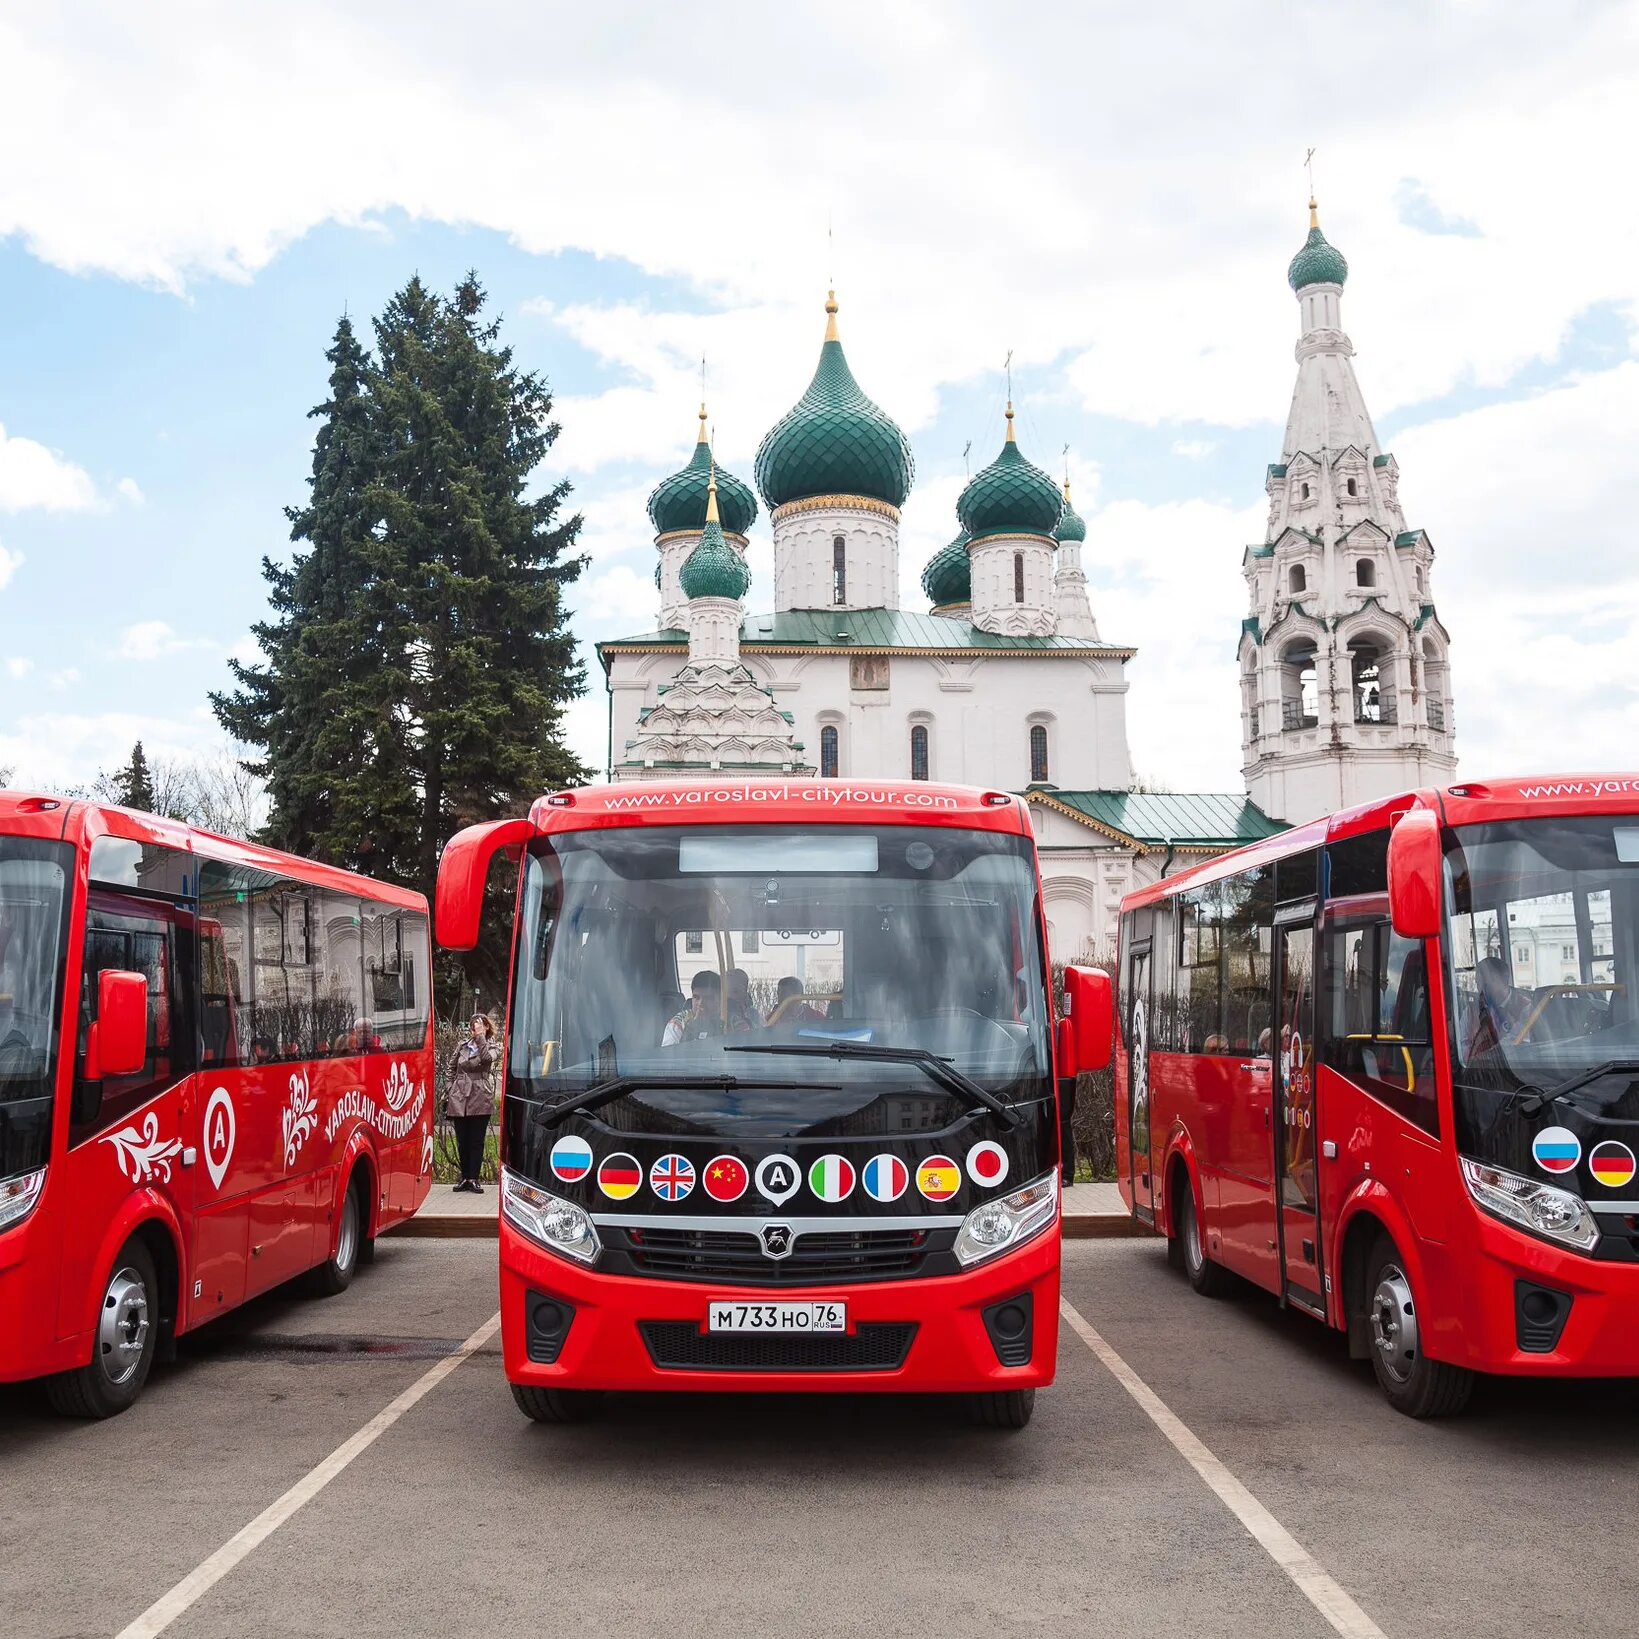 Автобусные туры набережные челны. Ярославль обзорная экскурсия. Автобусный тур. Автобусная экскурсия. Экскурсия на автобусе.